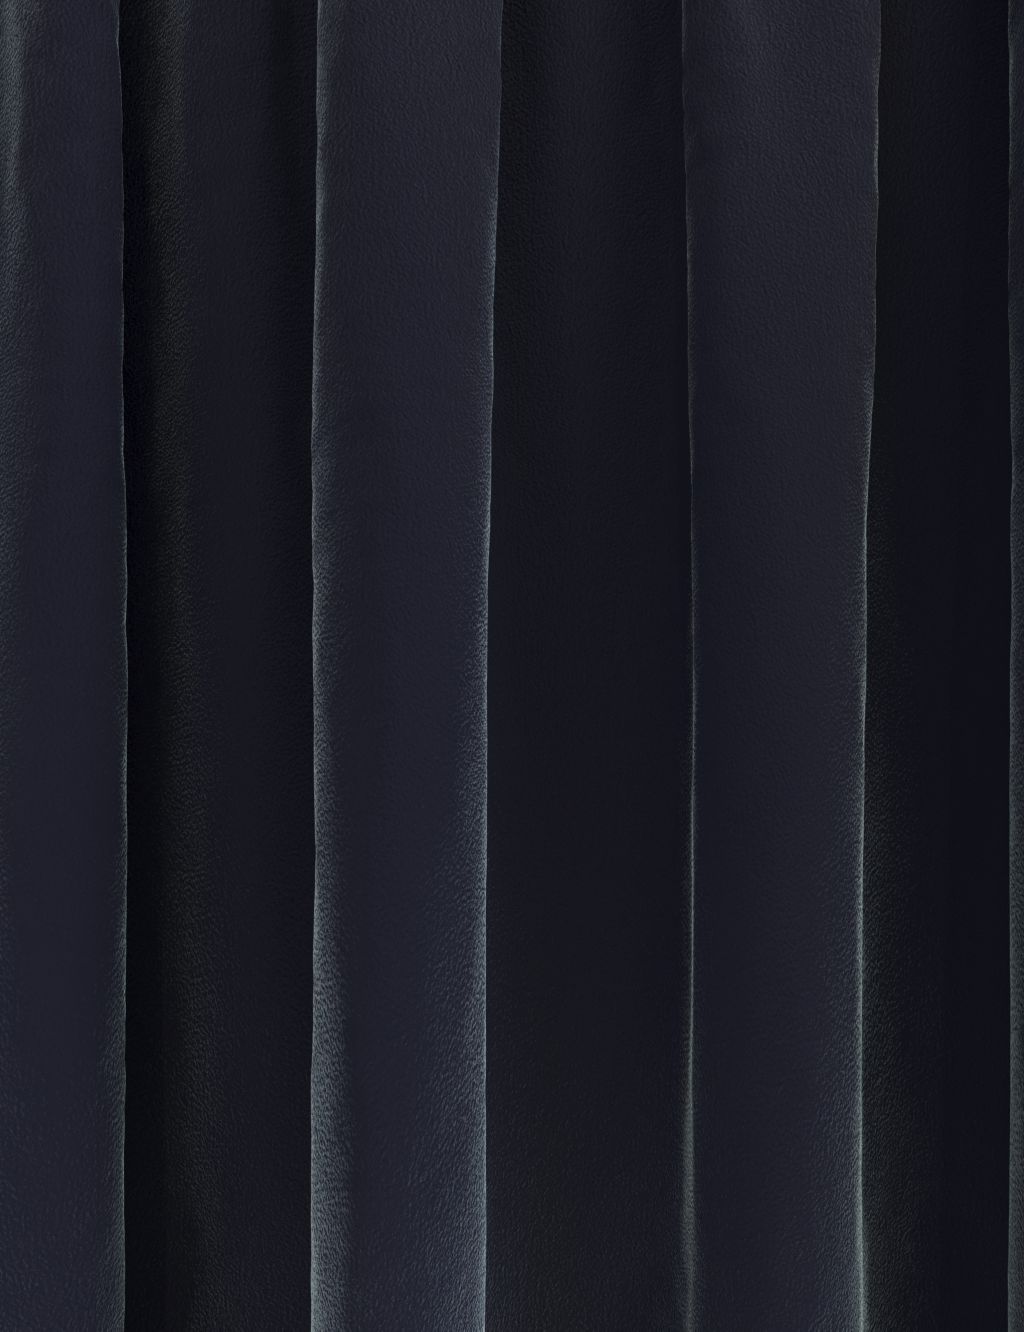 Velvet Pencil Pleat Ultra Temperature Smart Curtains 1 of 7